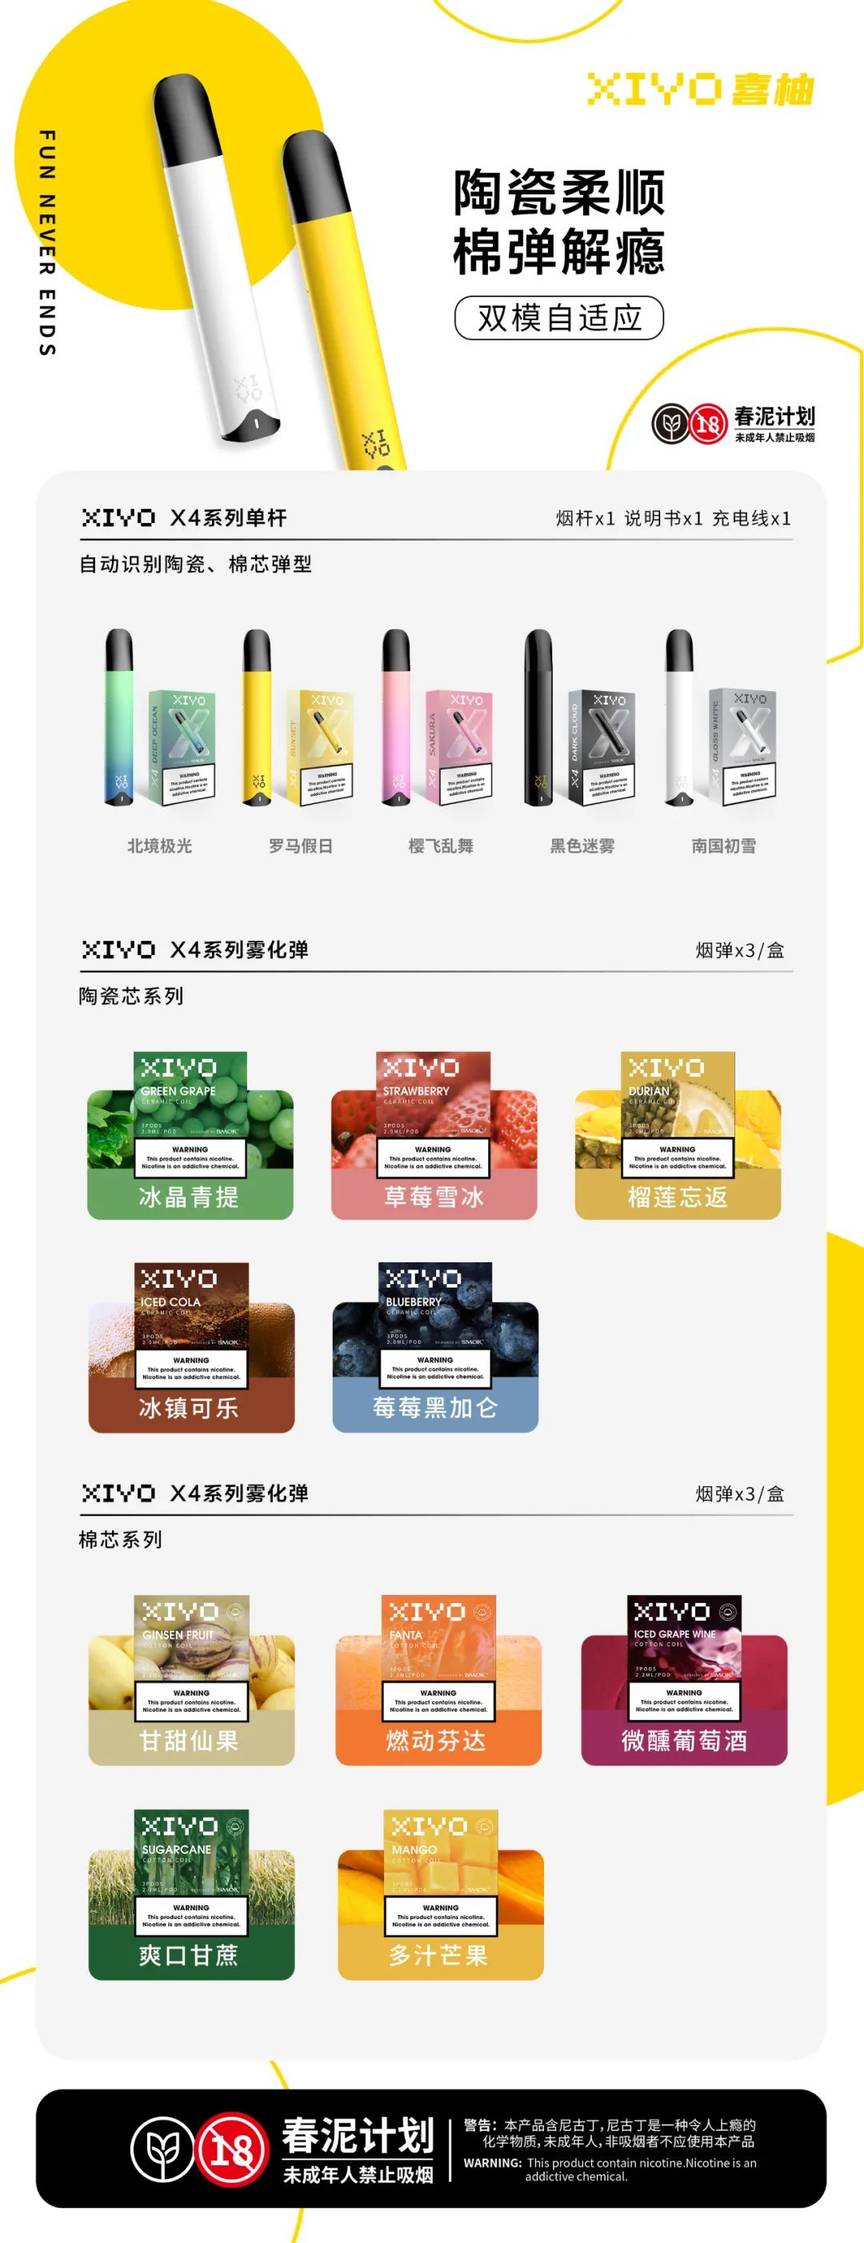 从XIYO喜柚x4电子烟新品谈起：双模自适应主机或成为2021下半年高端标配。